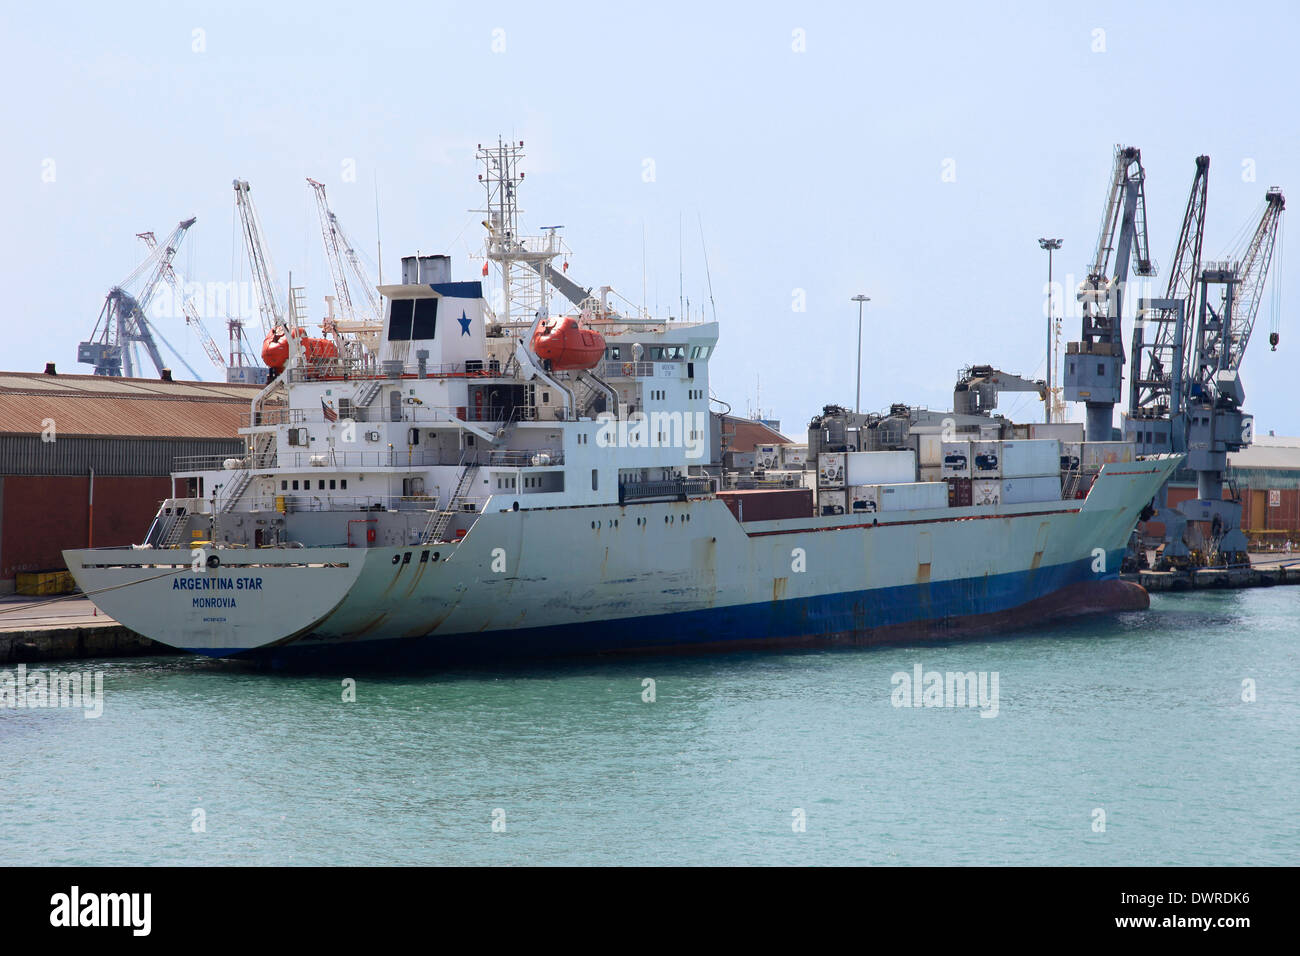 Barco frigorífico ARGENTINA STAR atracó en el puerto de Livorno, Italia Foto de stock